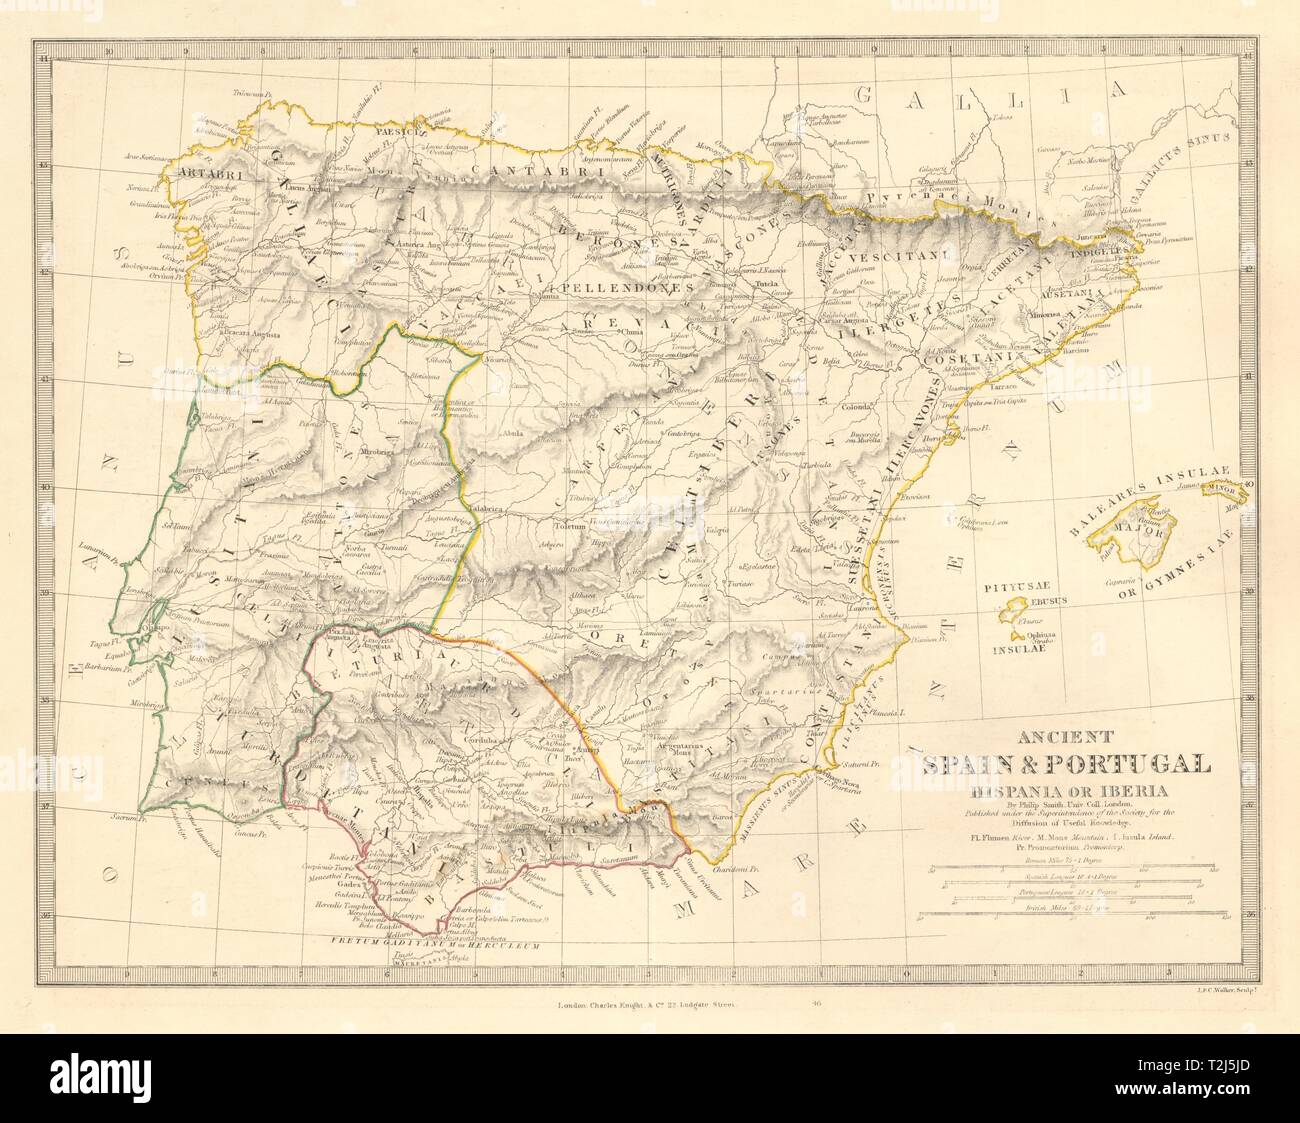 HISPANIA IBERIA. Antica Spagna & Portogallo. Nomi romani e strade. SDUK 1845 mappa Foto Stock